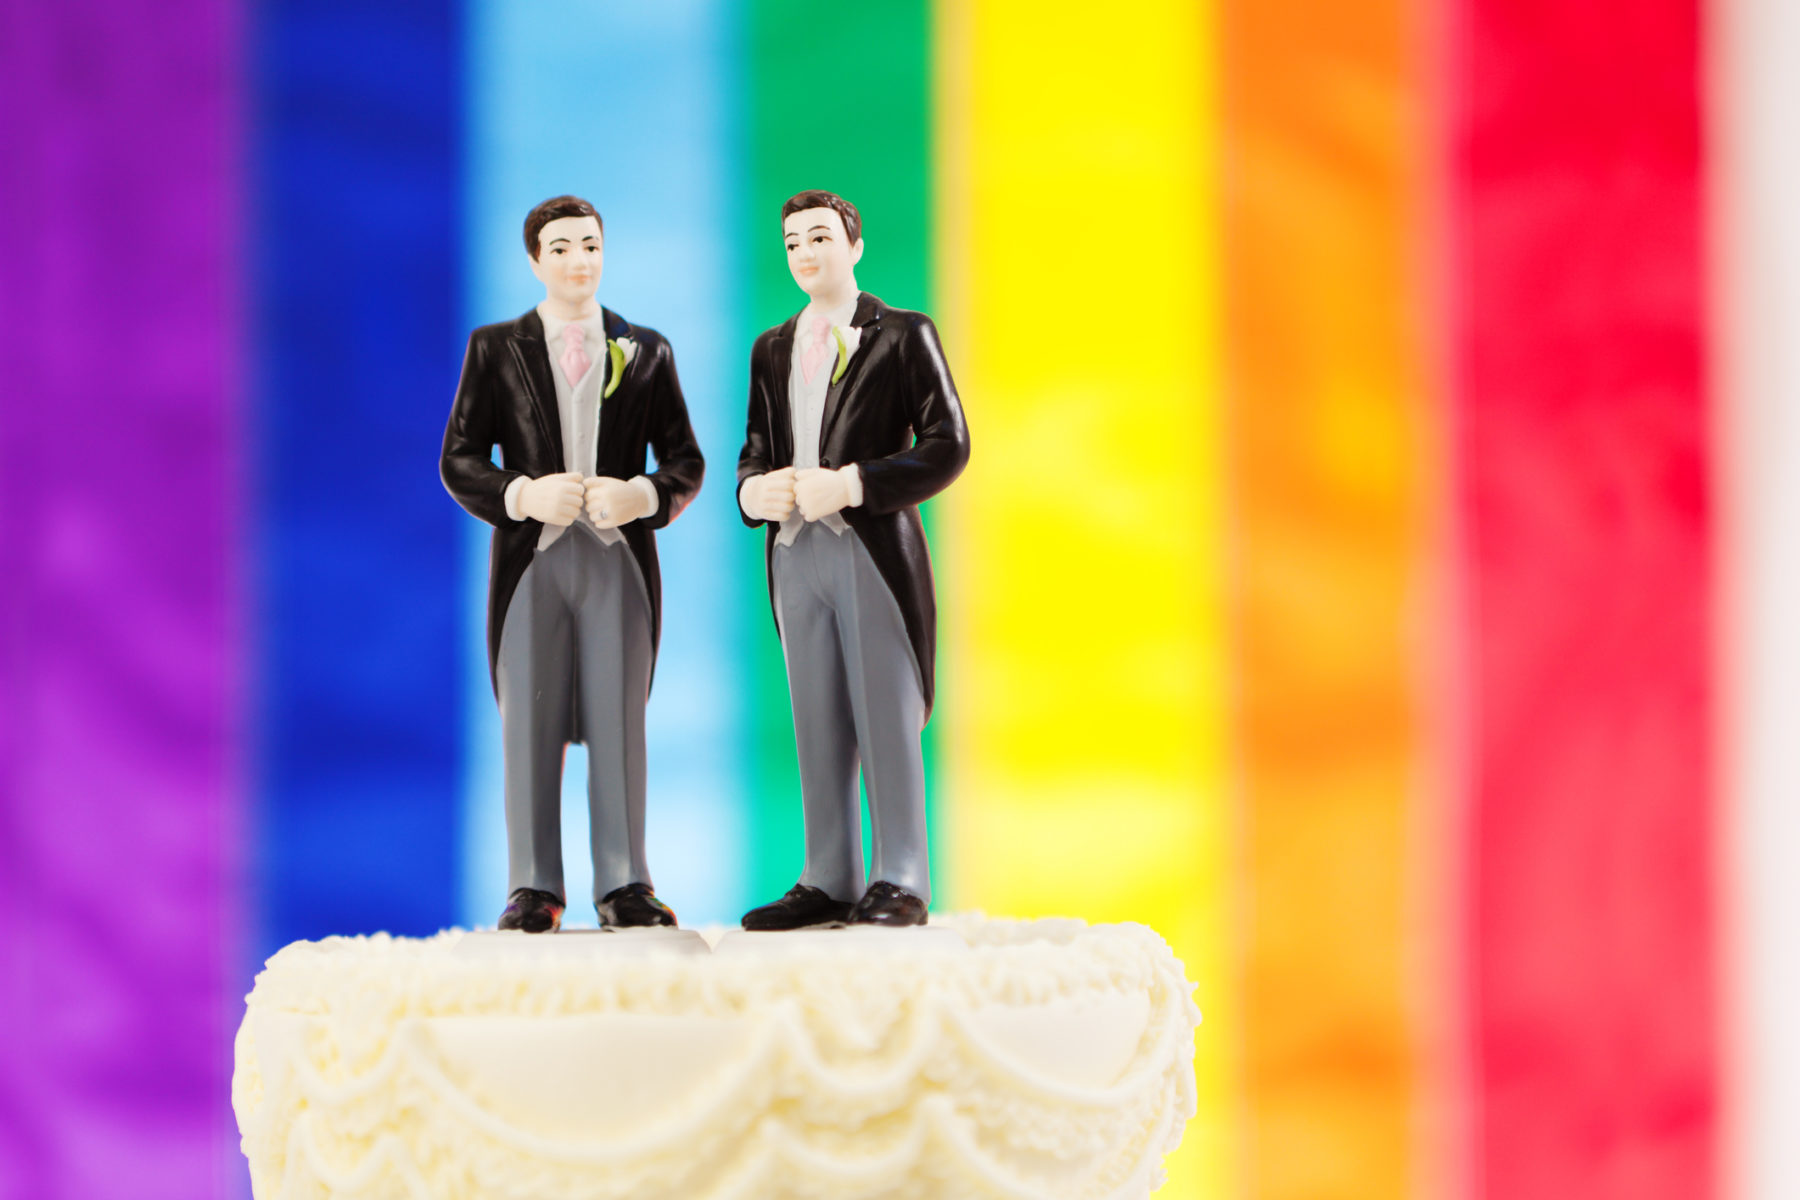 Deux petites figurines d'hommes en costumes au sommet d'un gâteau de mariage. En arrière-plan, les couleurs du drapeau LGBT.